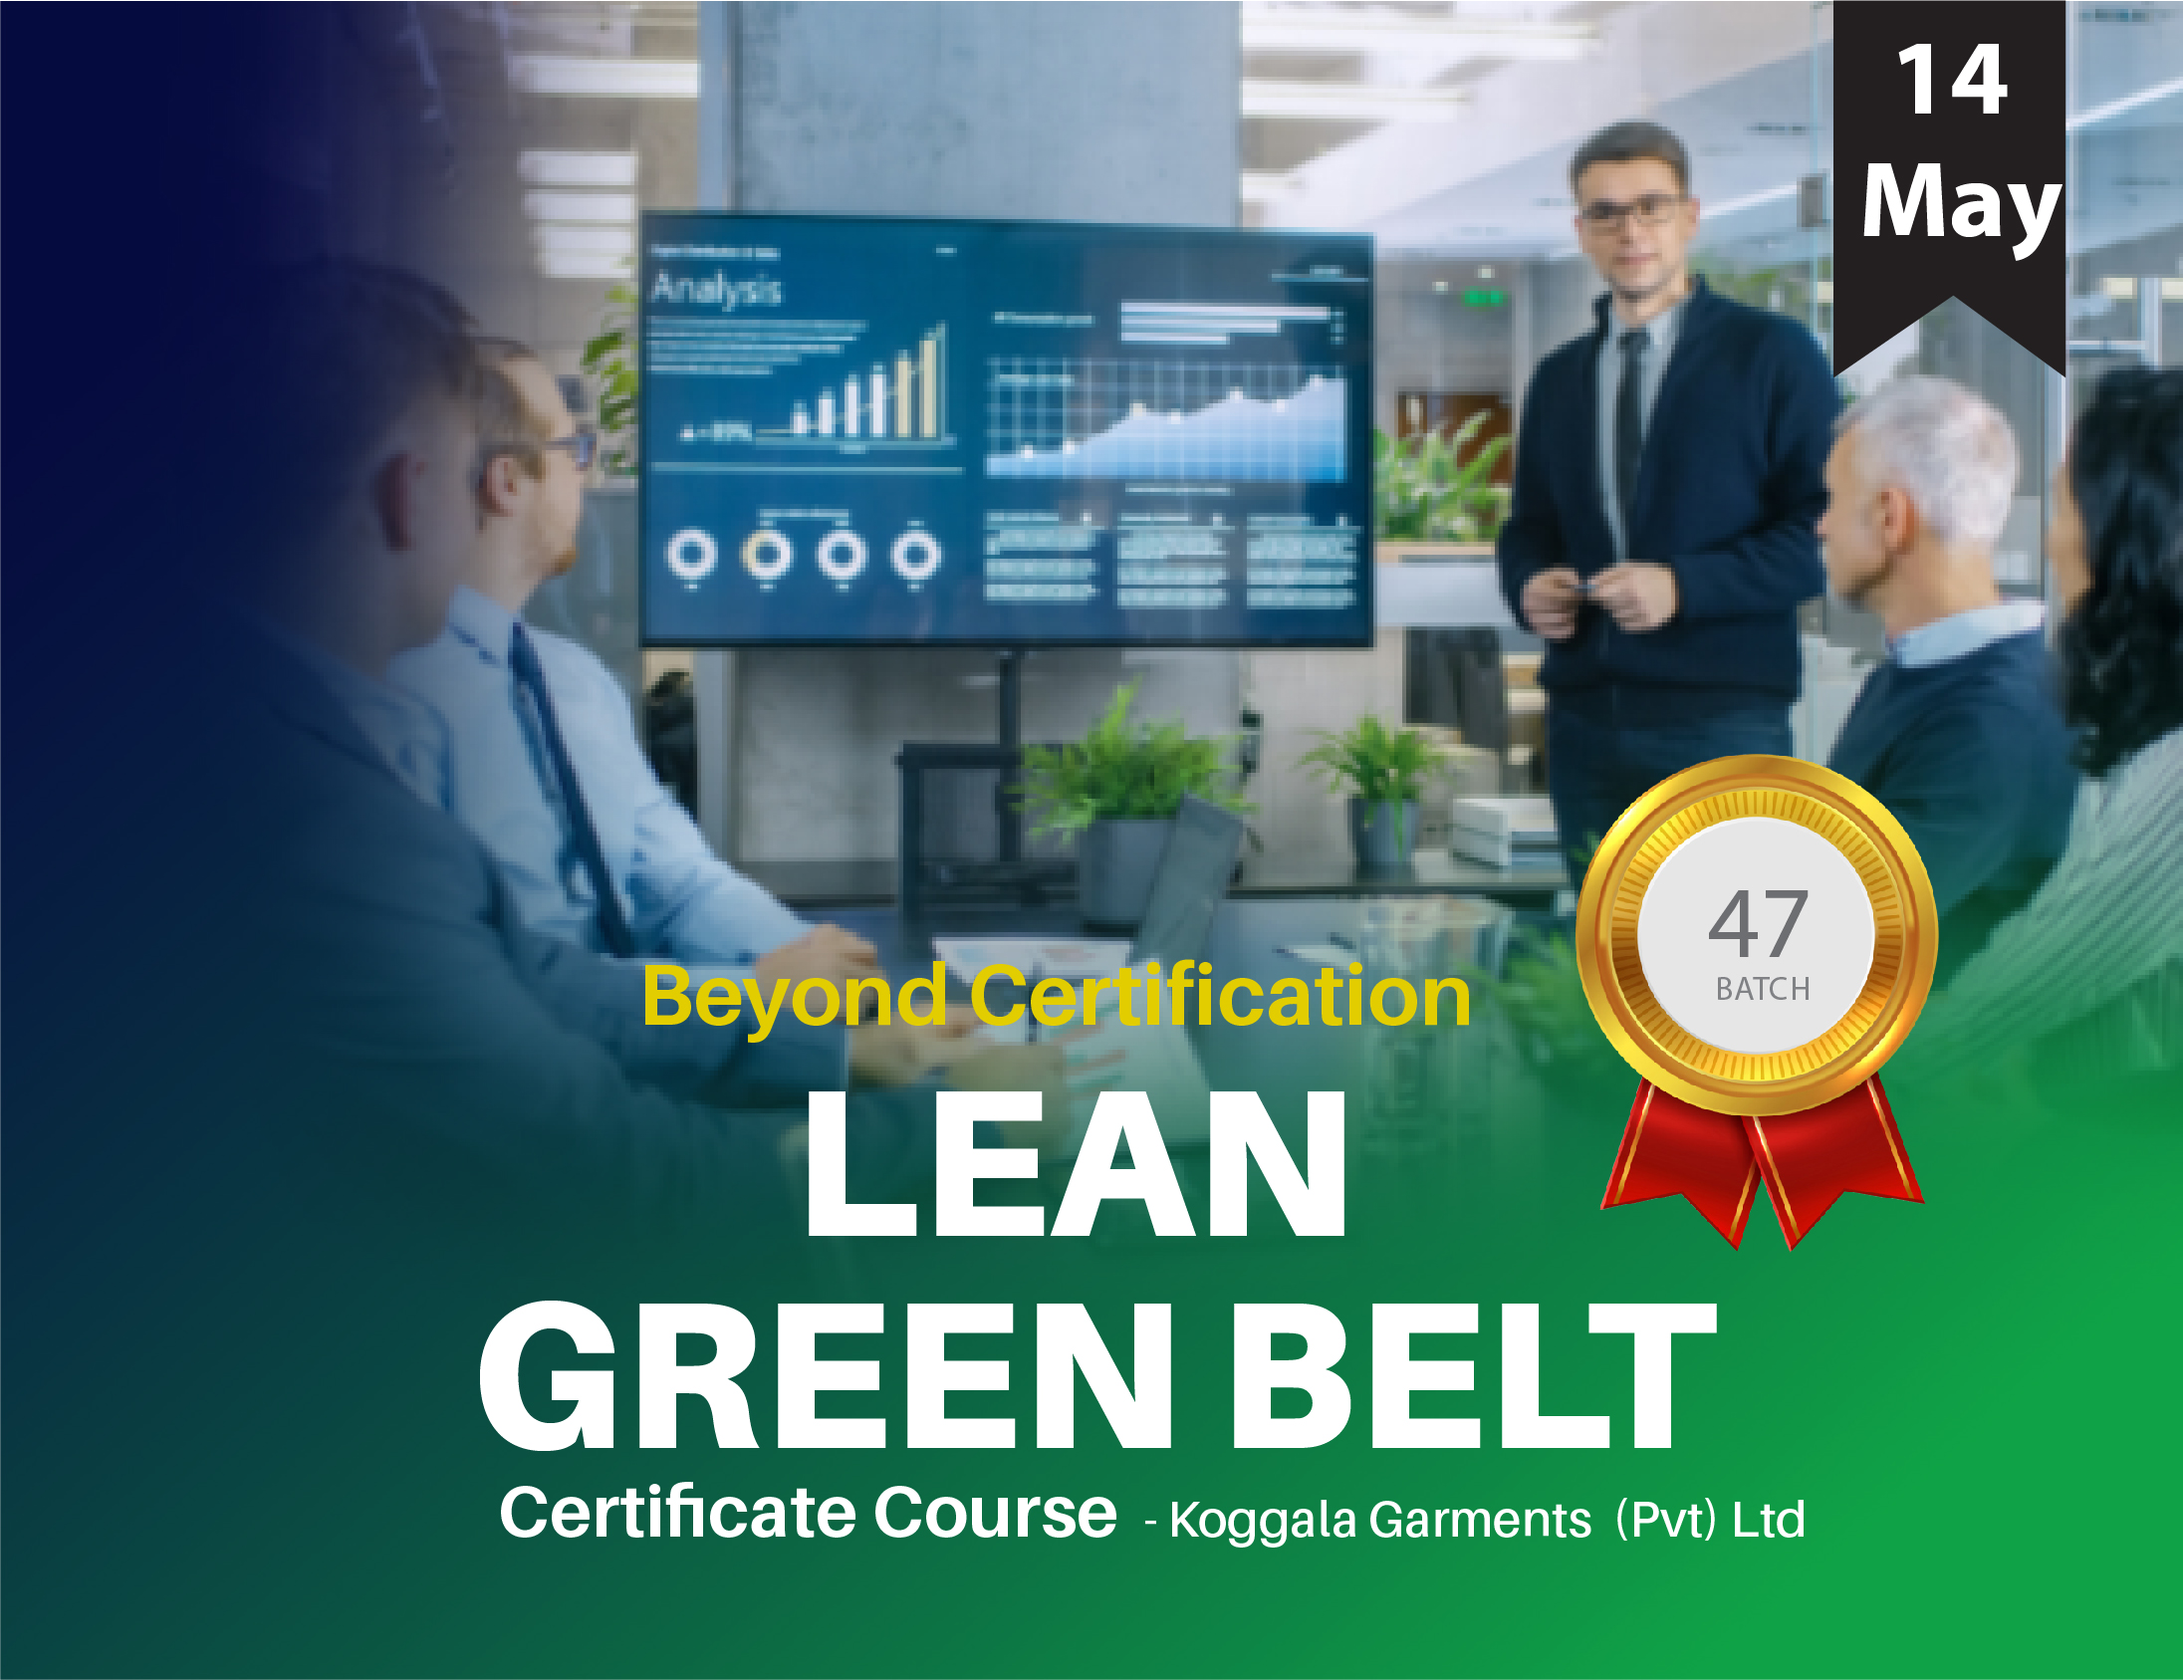 Lean Green Belt Certificate Course